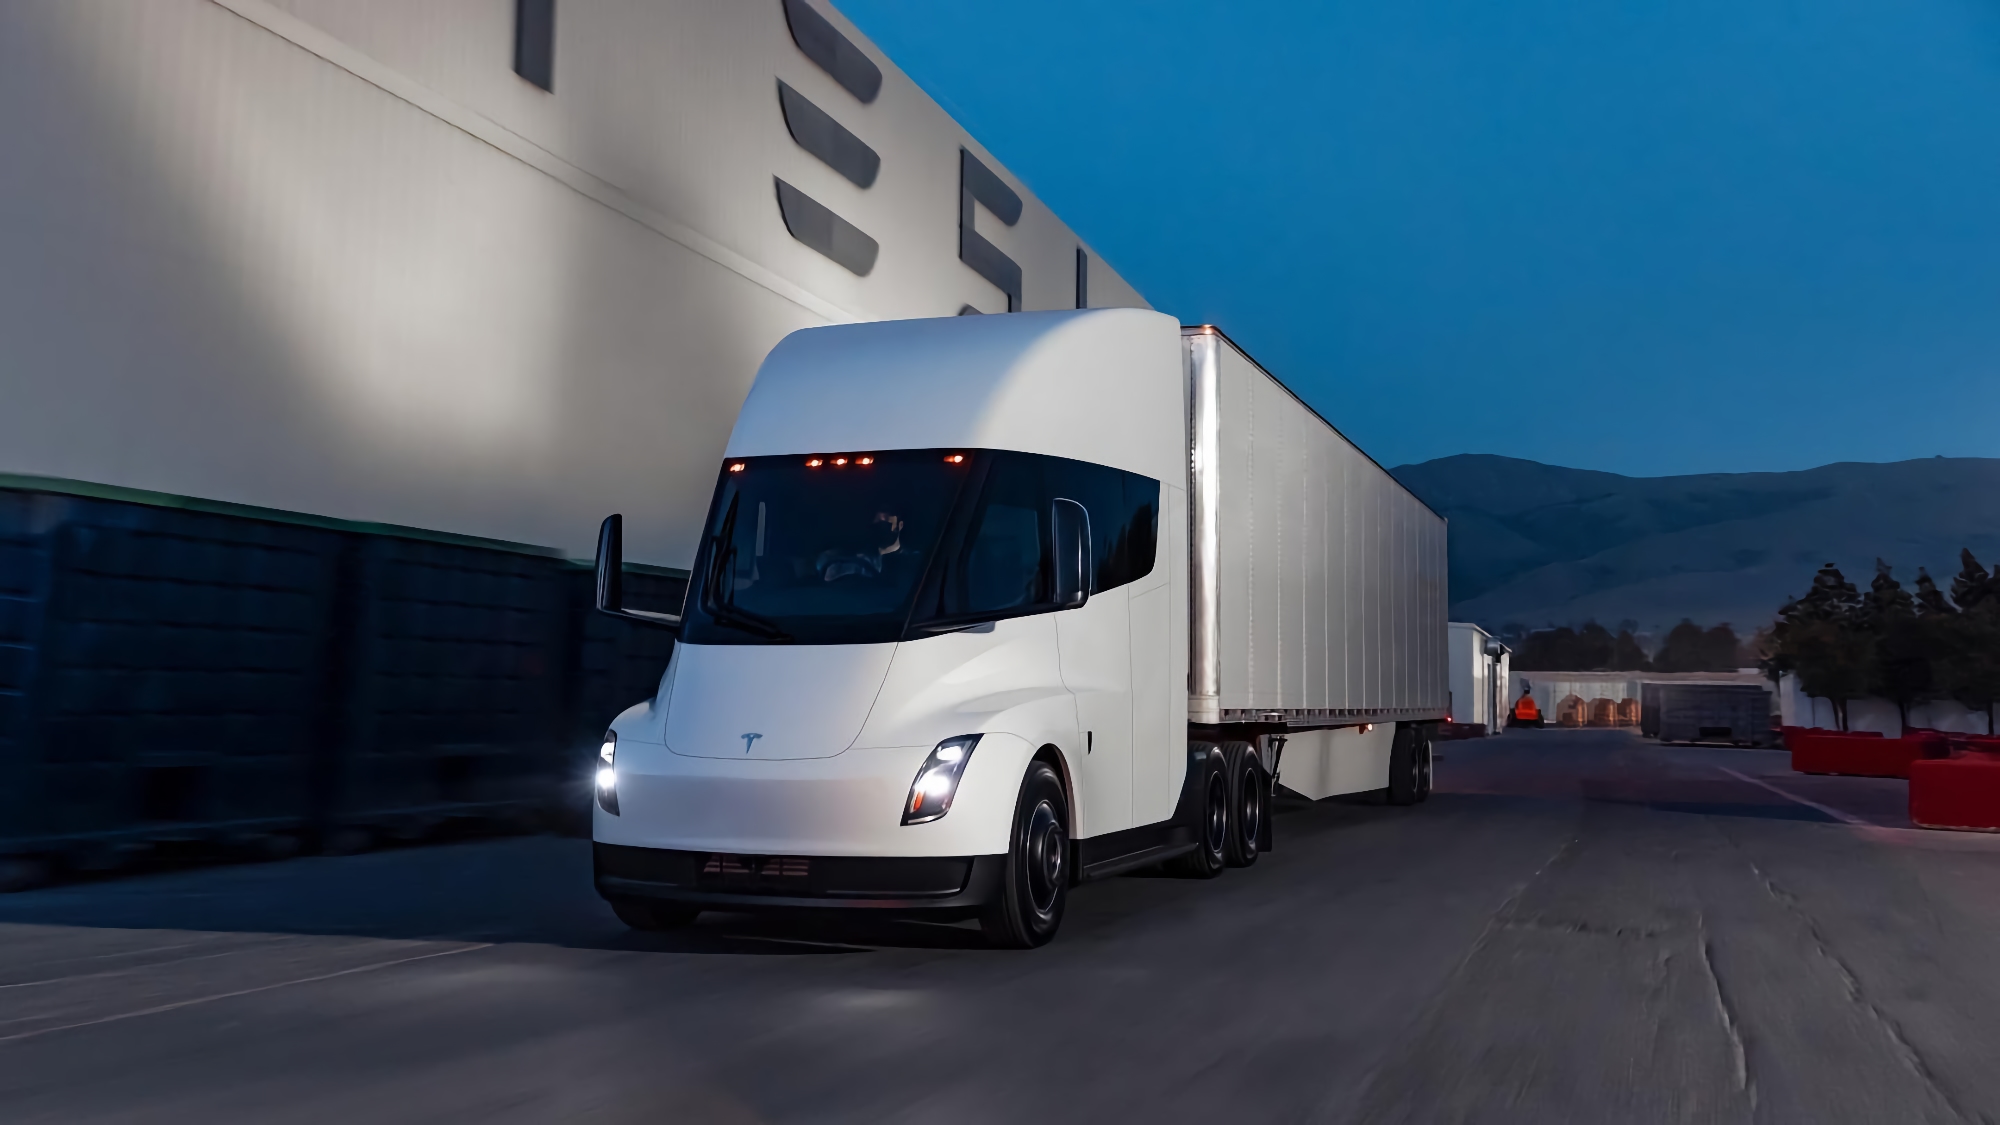 Elon Musk a annoncé le début de la production en série du Tesla Semi avec une autonomie de 800 km, le premier camion électrique recevra l'entreprise Pepsi